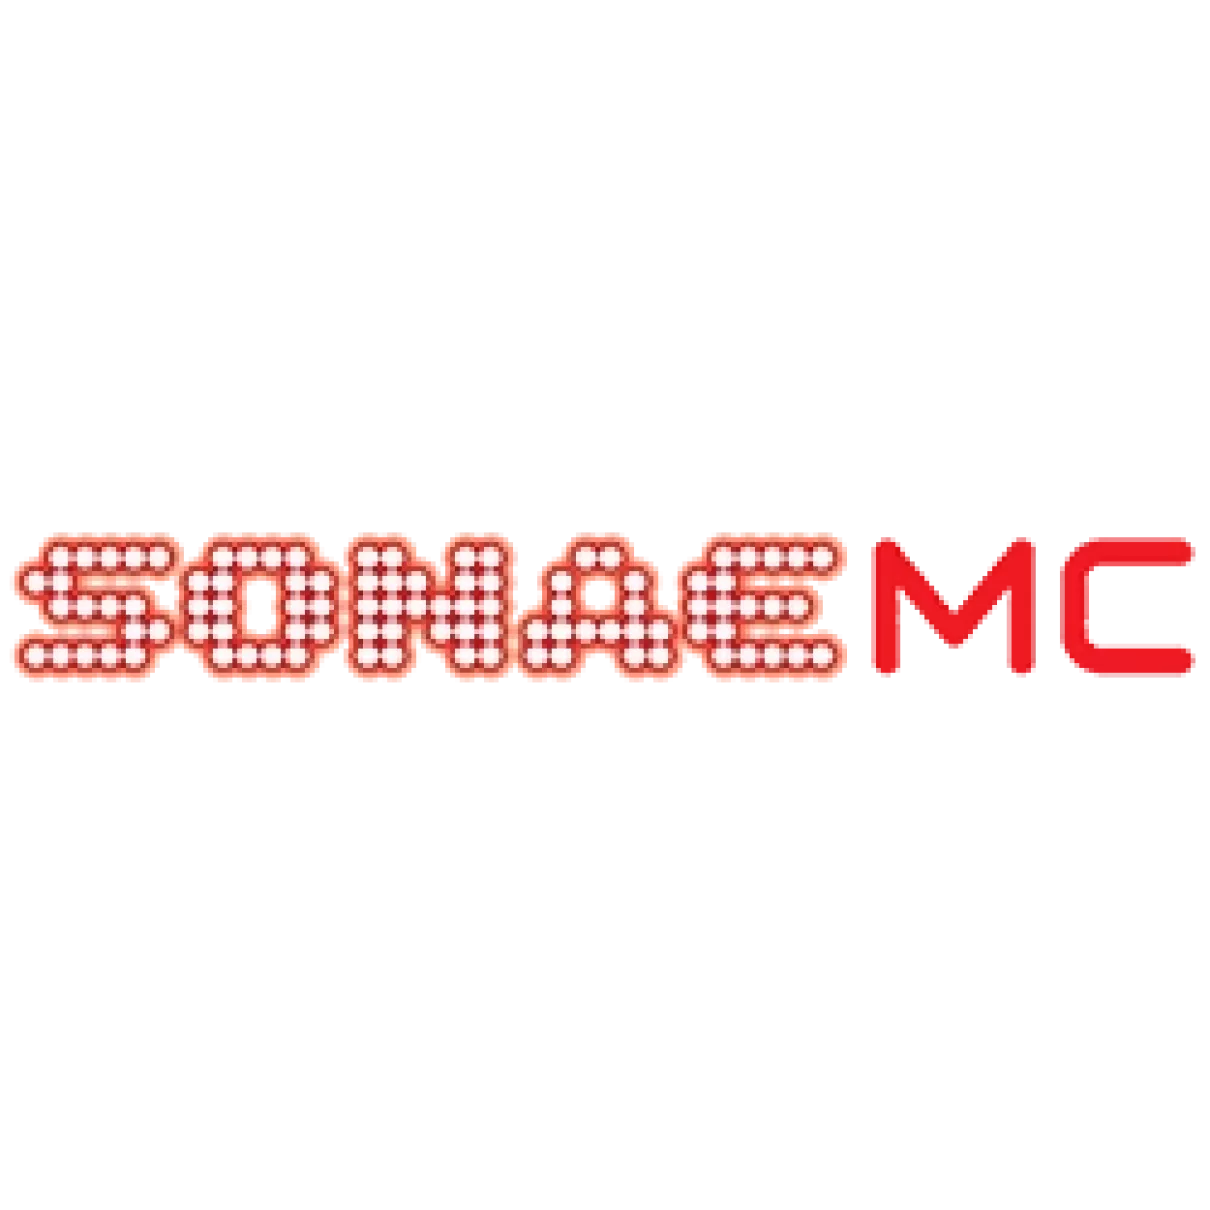 Sonae MC